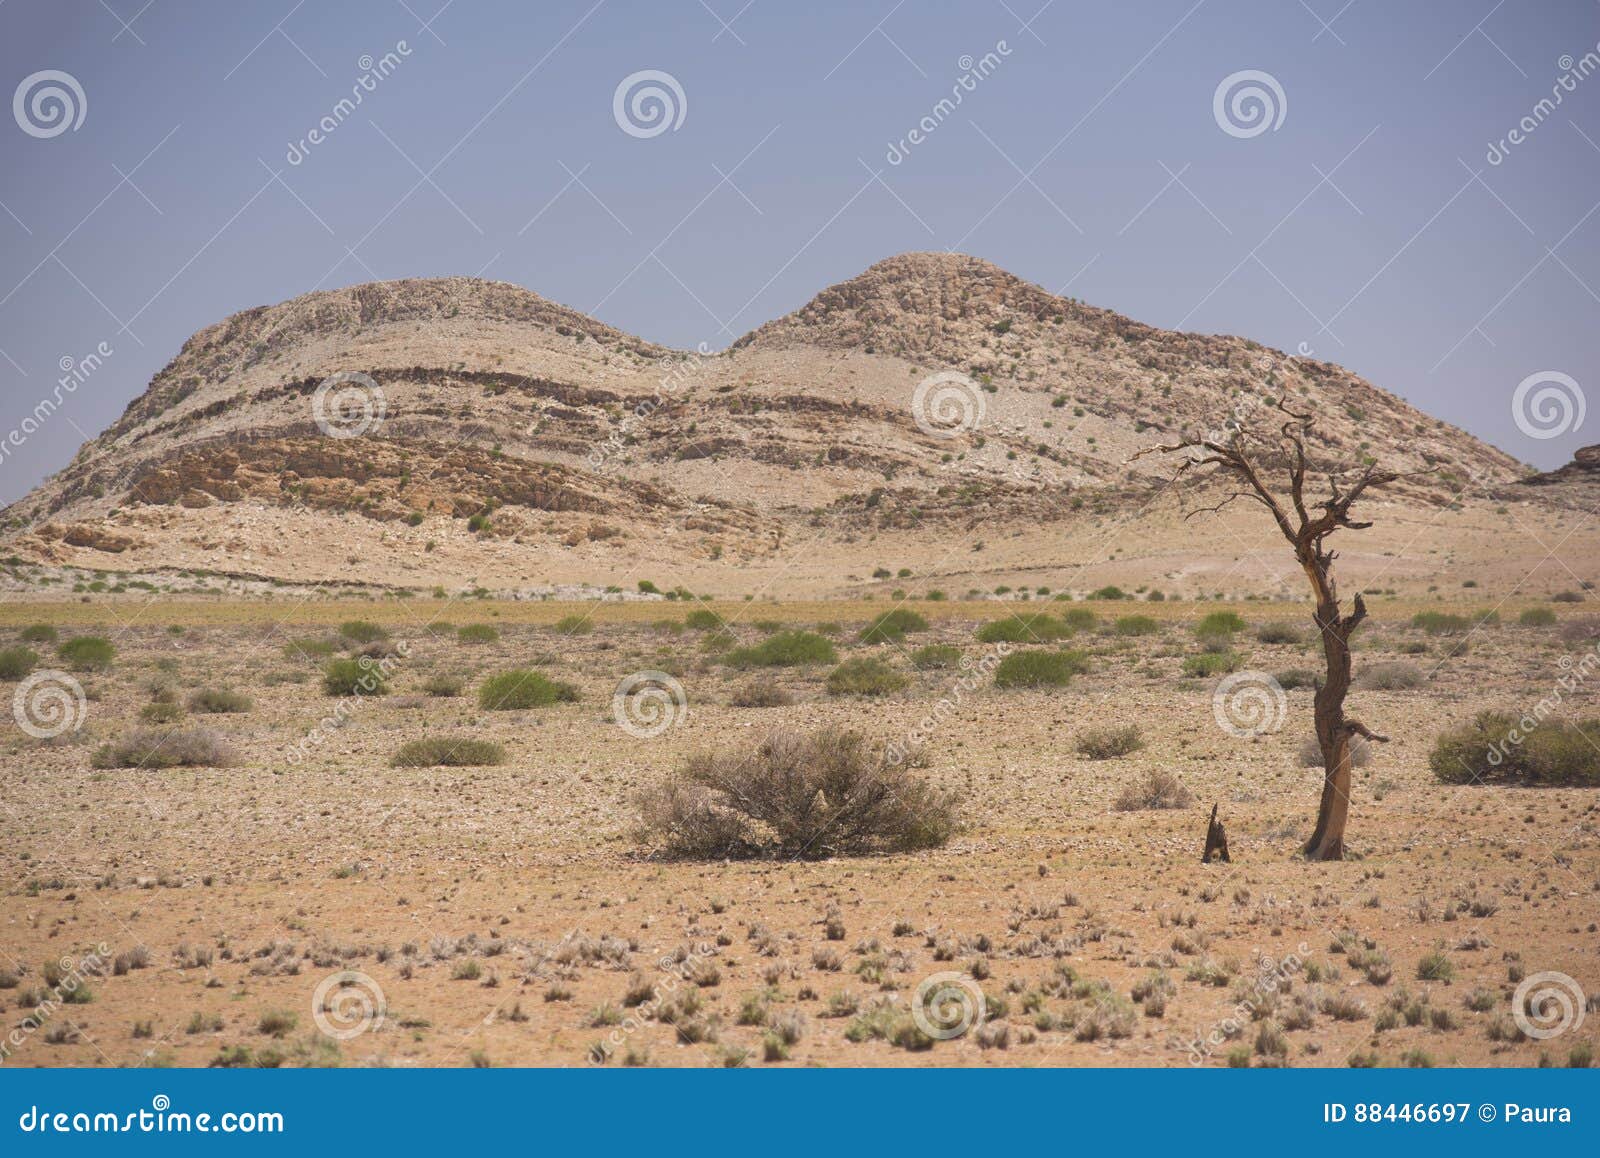 namib desert, namibia